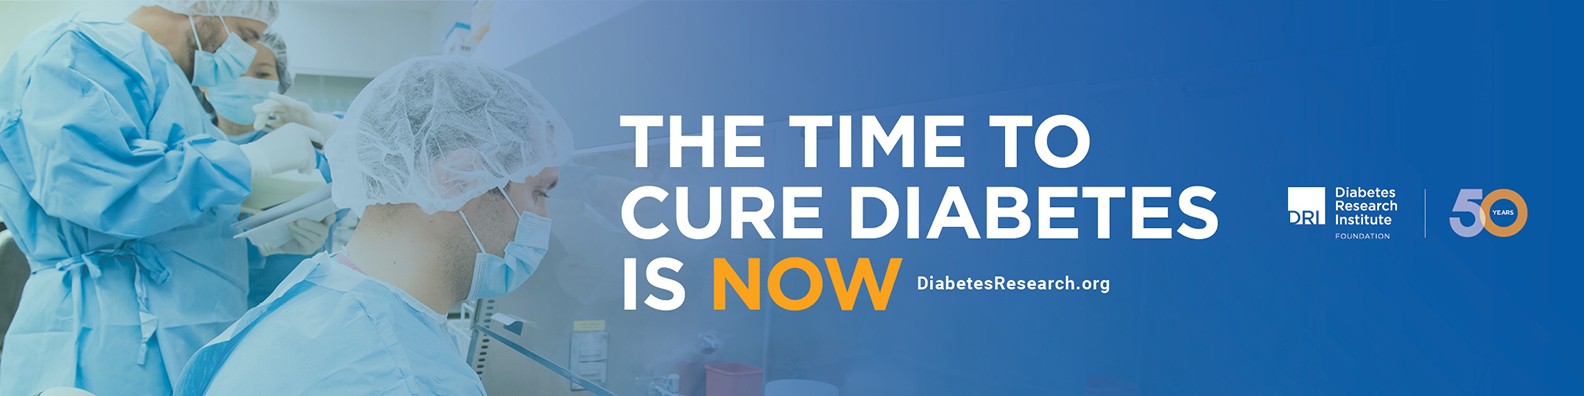 A 21. század járványa: a cukorbetegség. Hogyan lehet megszabadulni tőle?